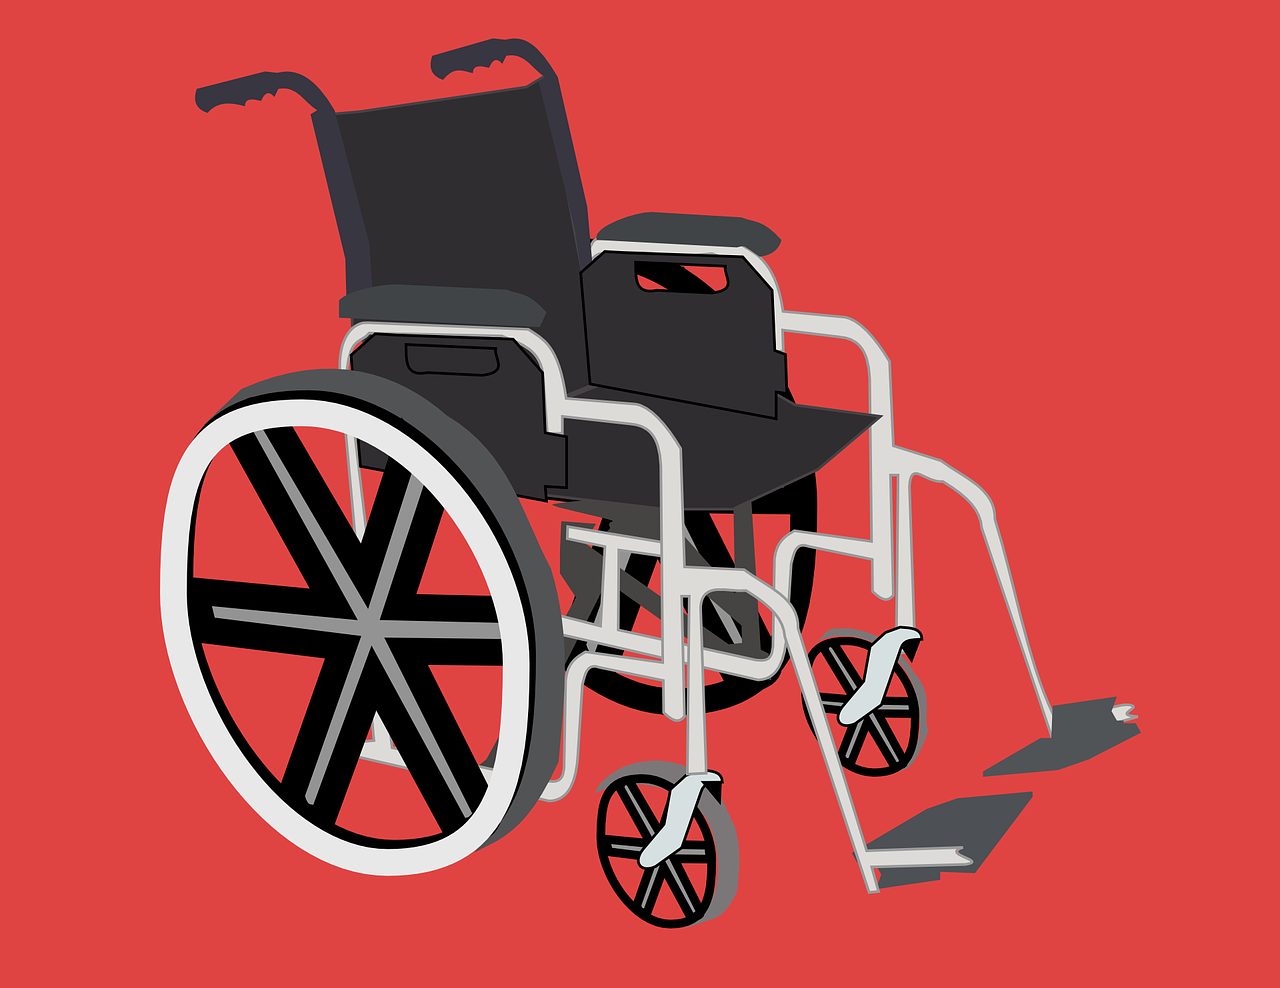 Fokus Pijnacker Nootdorp beoordeling instelling gehandicaptenzorg verstandelijk gehandicapten